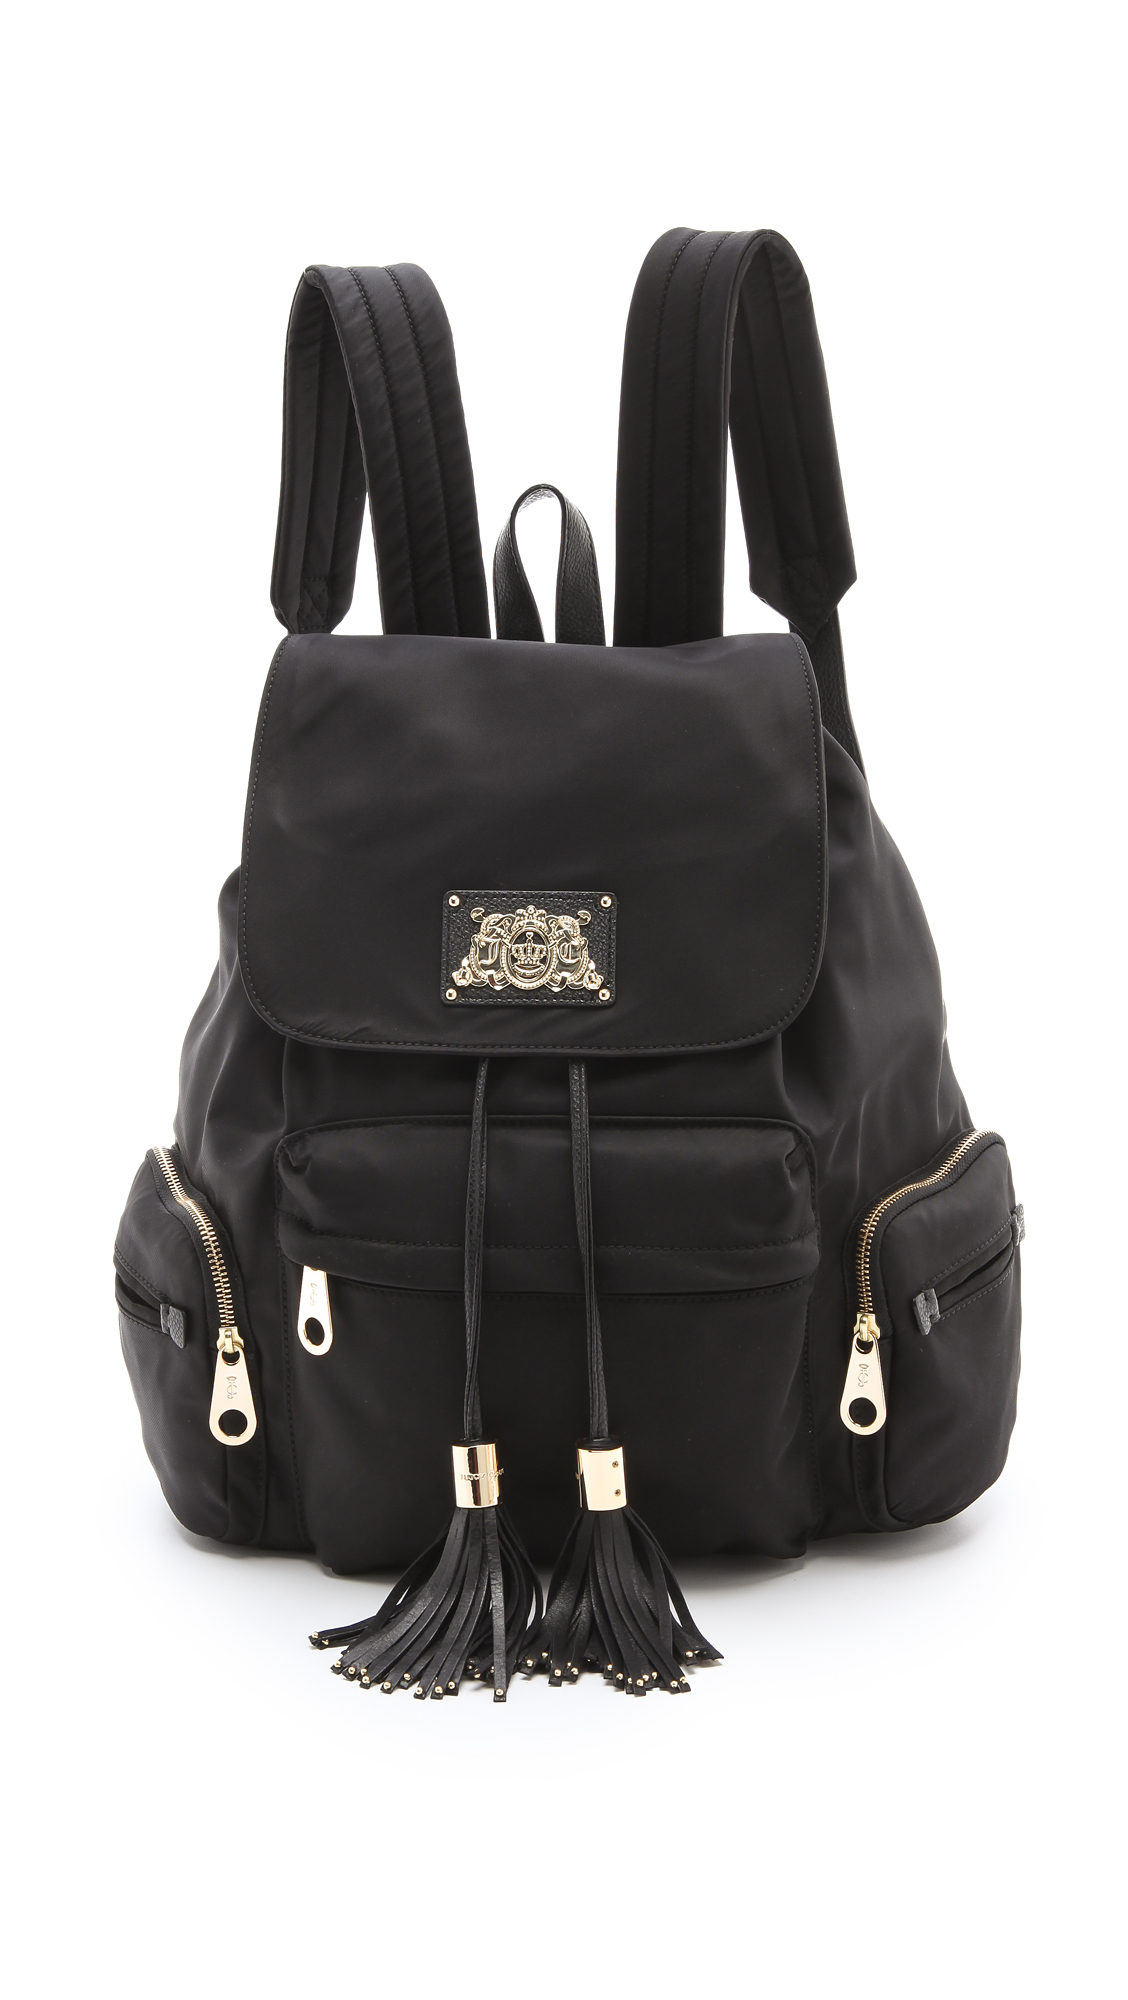 Juicy Couture KIMBERLY SMALL HOBO SET - Handbag - black - Zalando.de